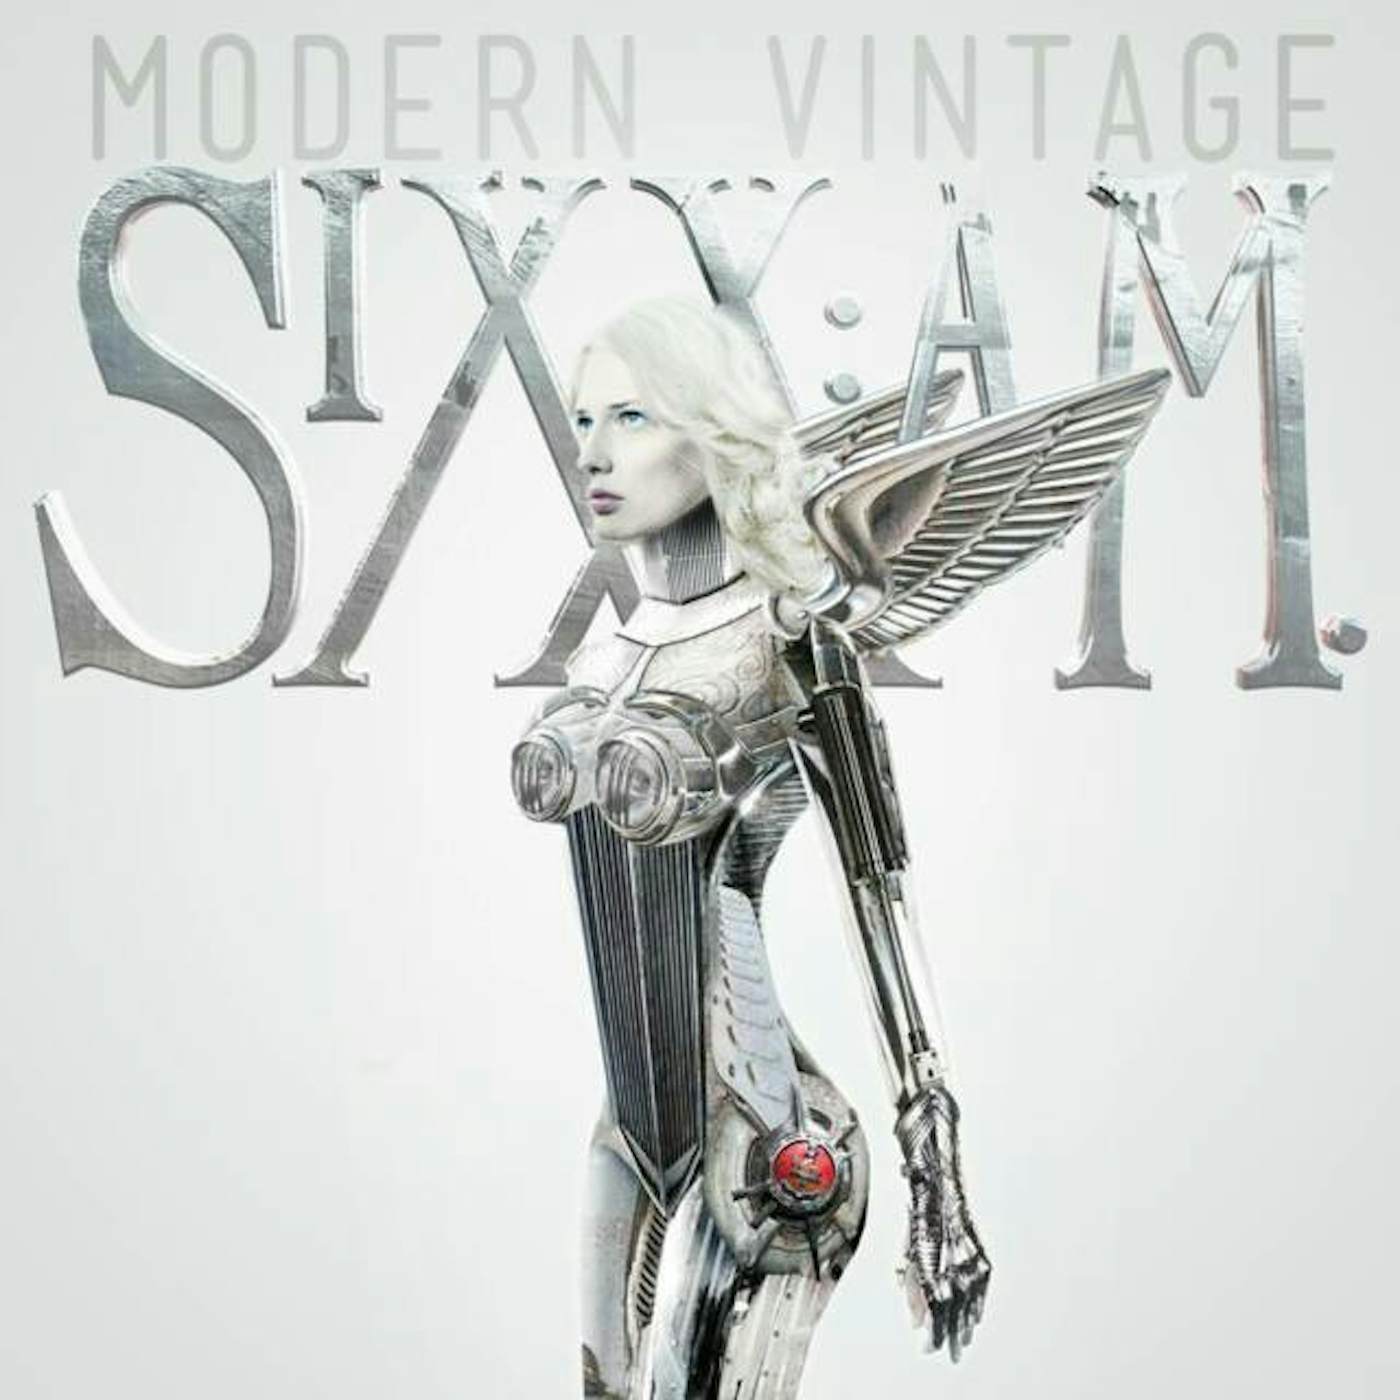 Sixx:A.M. - Modern Vintage CD